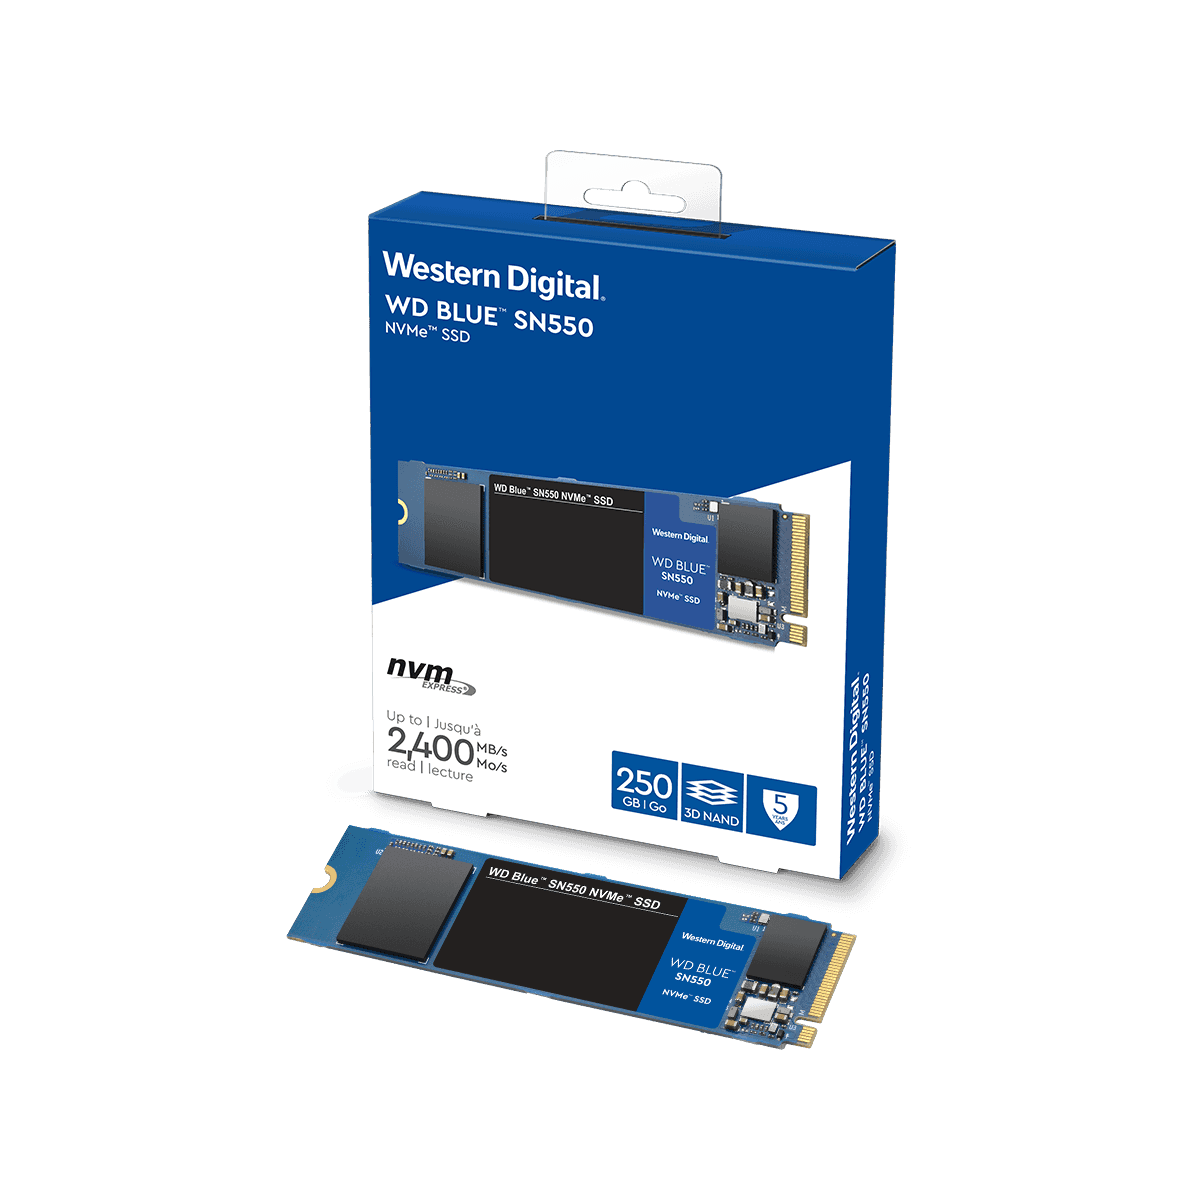 ★未使用品★ WD BLUE SSD M.2 250GB